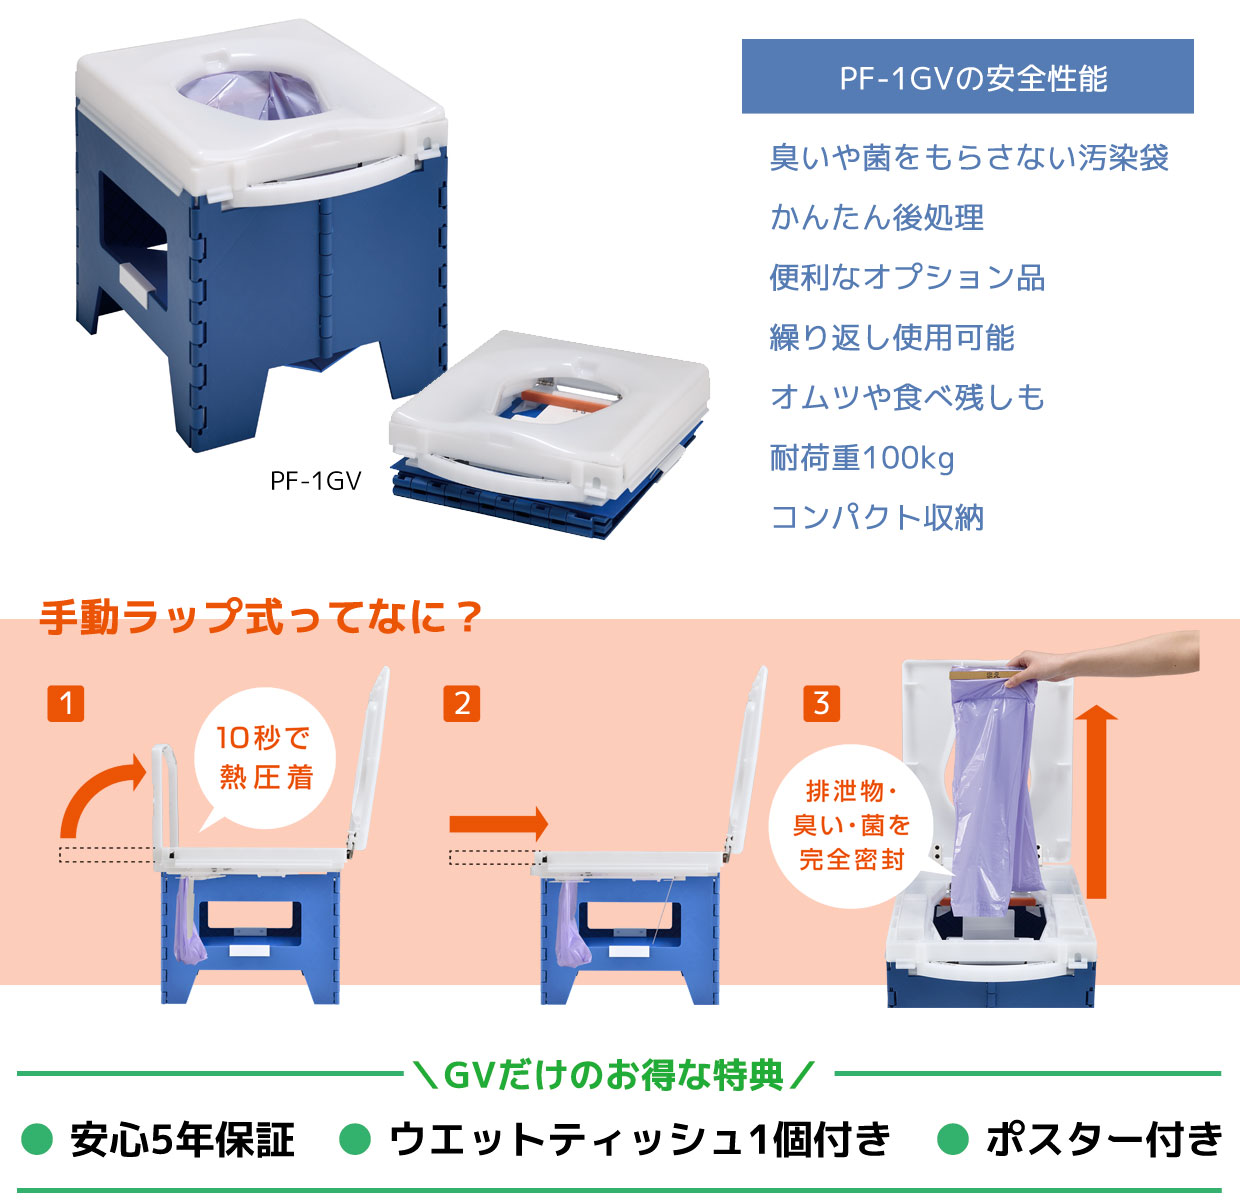 牧德が提供する自治体防災備蓄　手動ラップ式簡易トイレ
『ラップポン　PF-1GV』